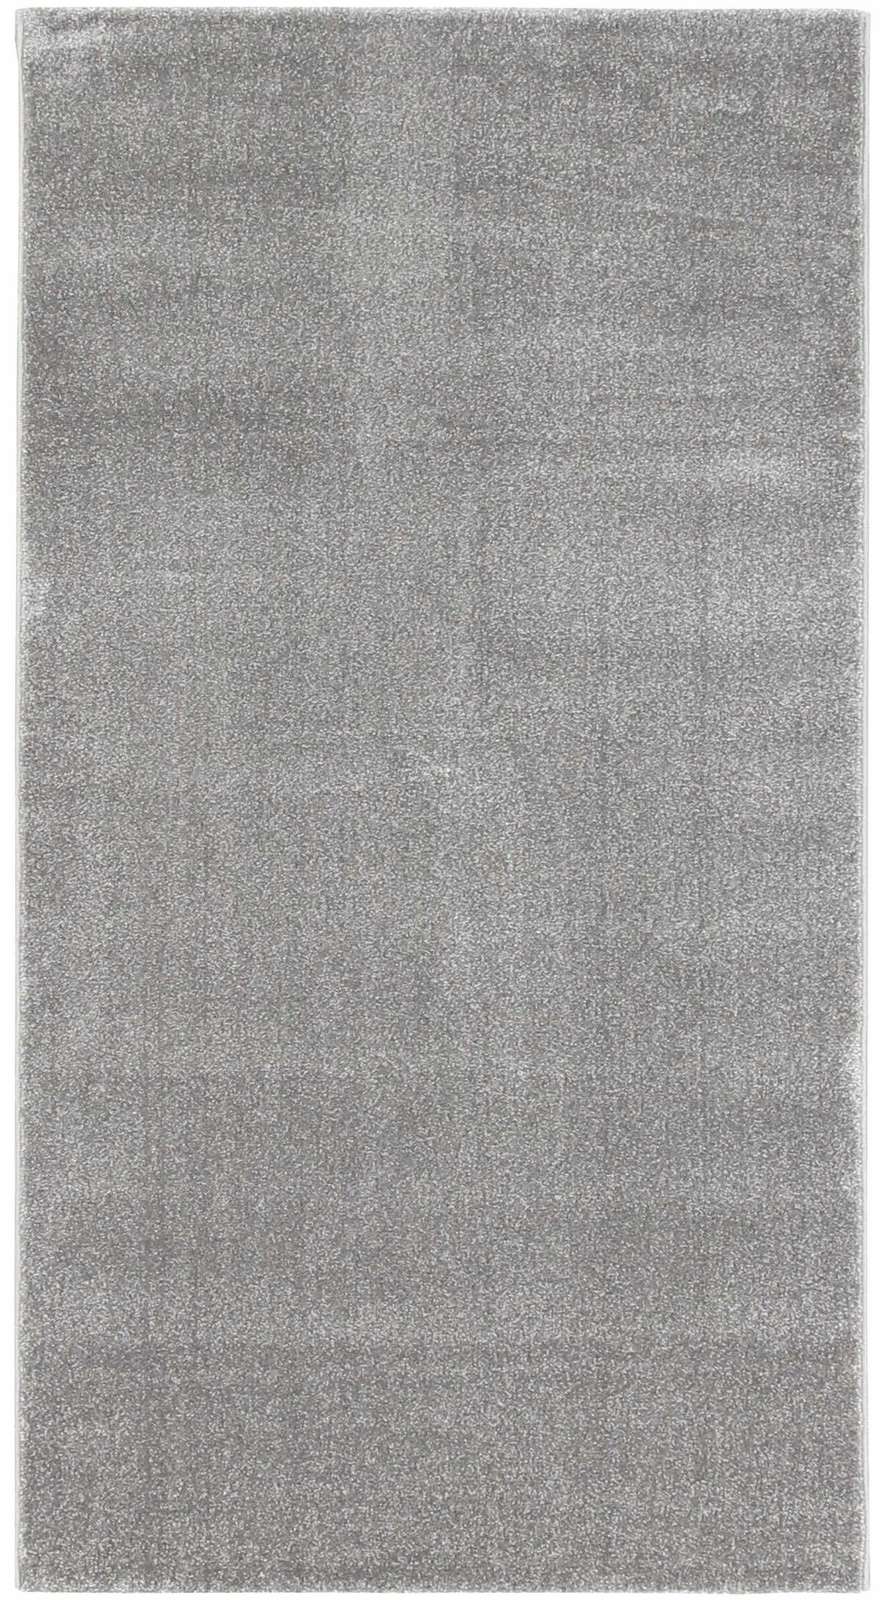 Bild på mattan Alice wiltonmatta metervara